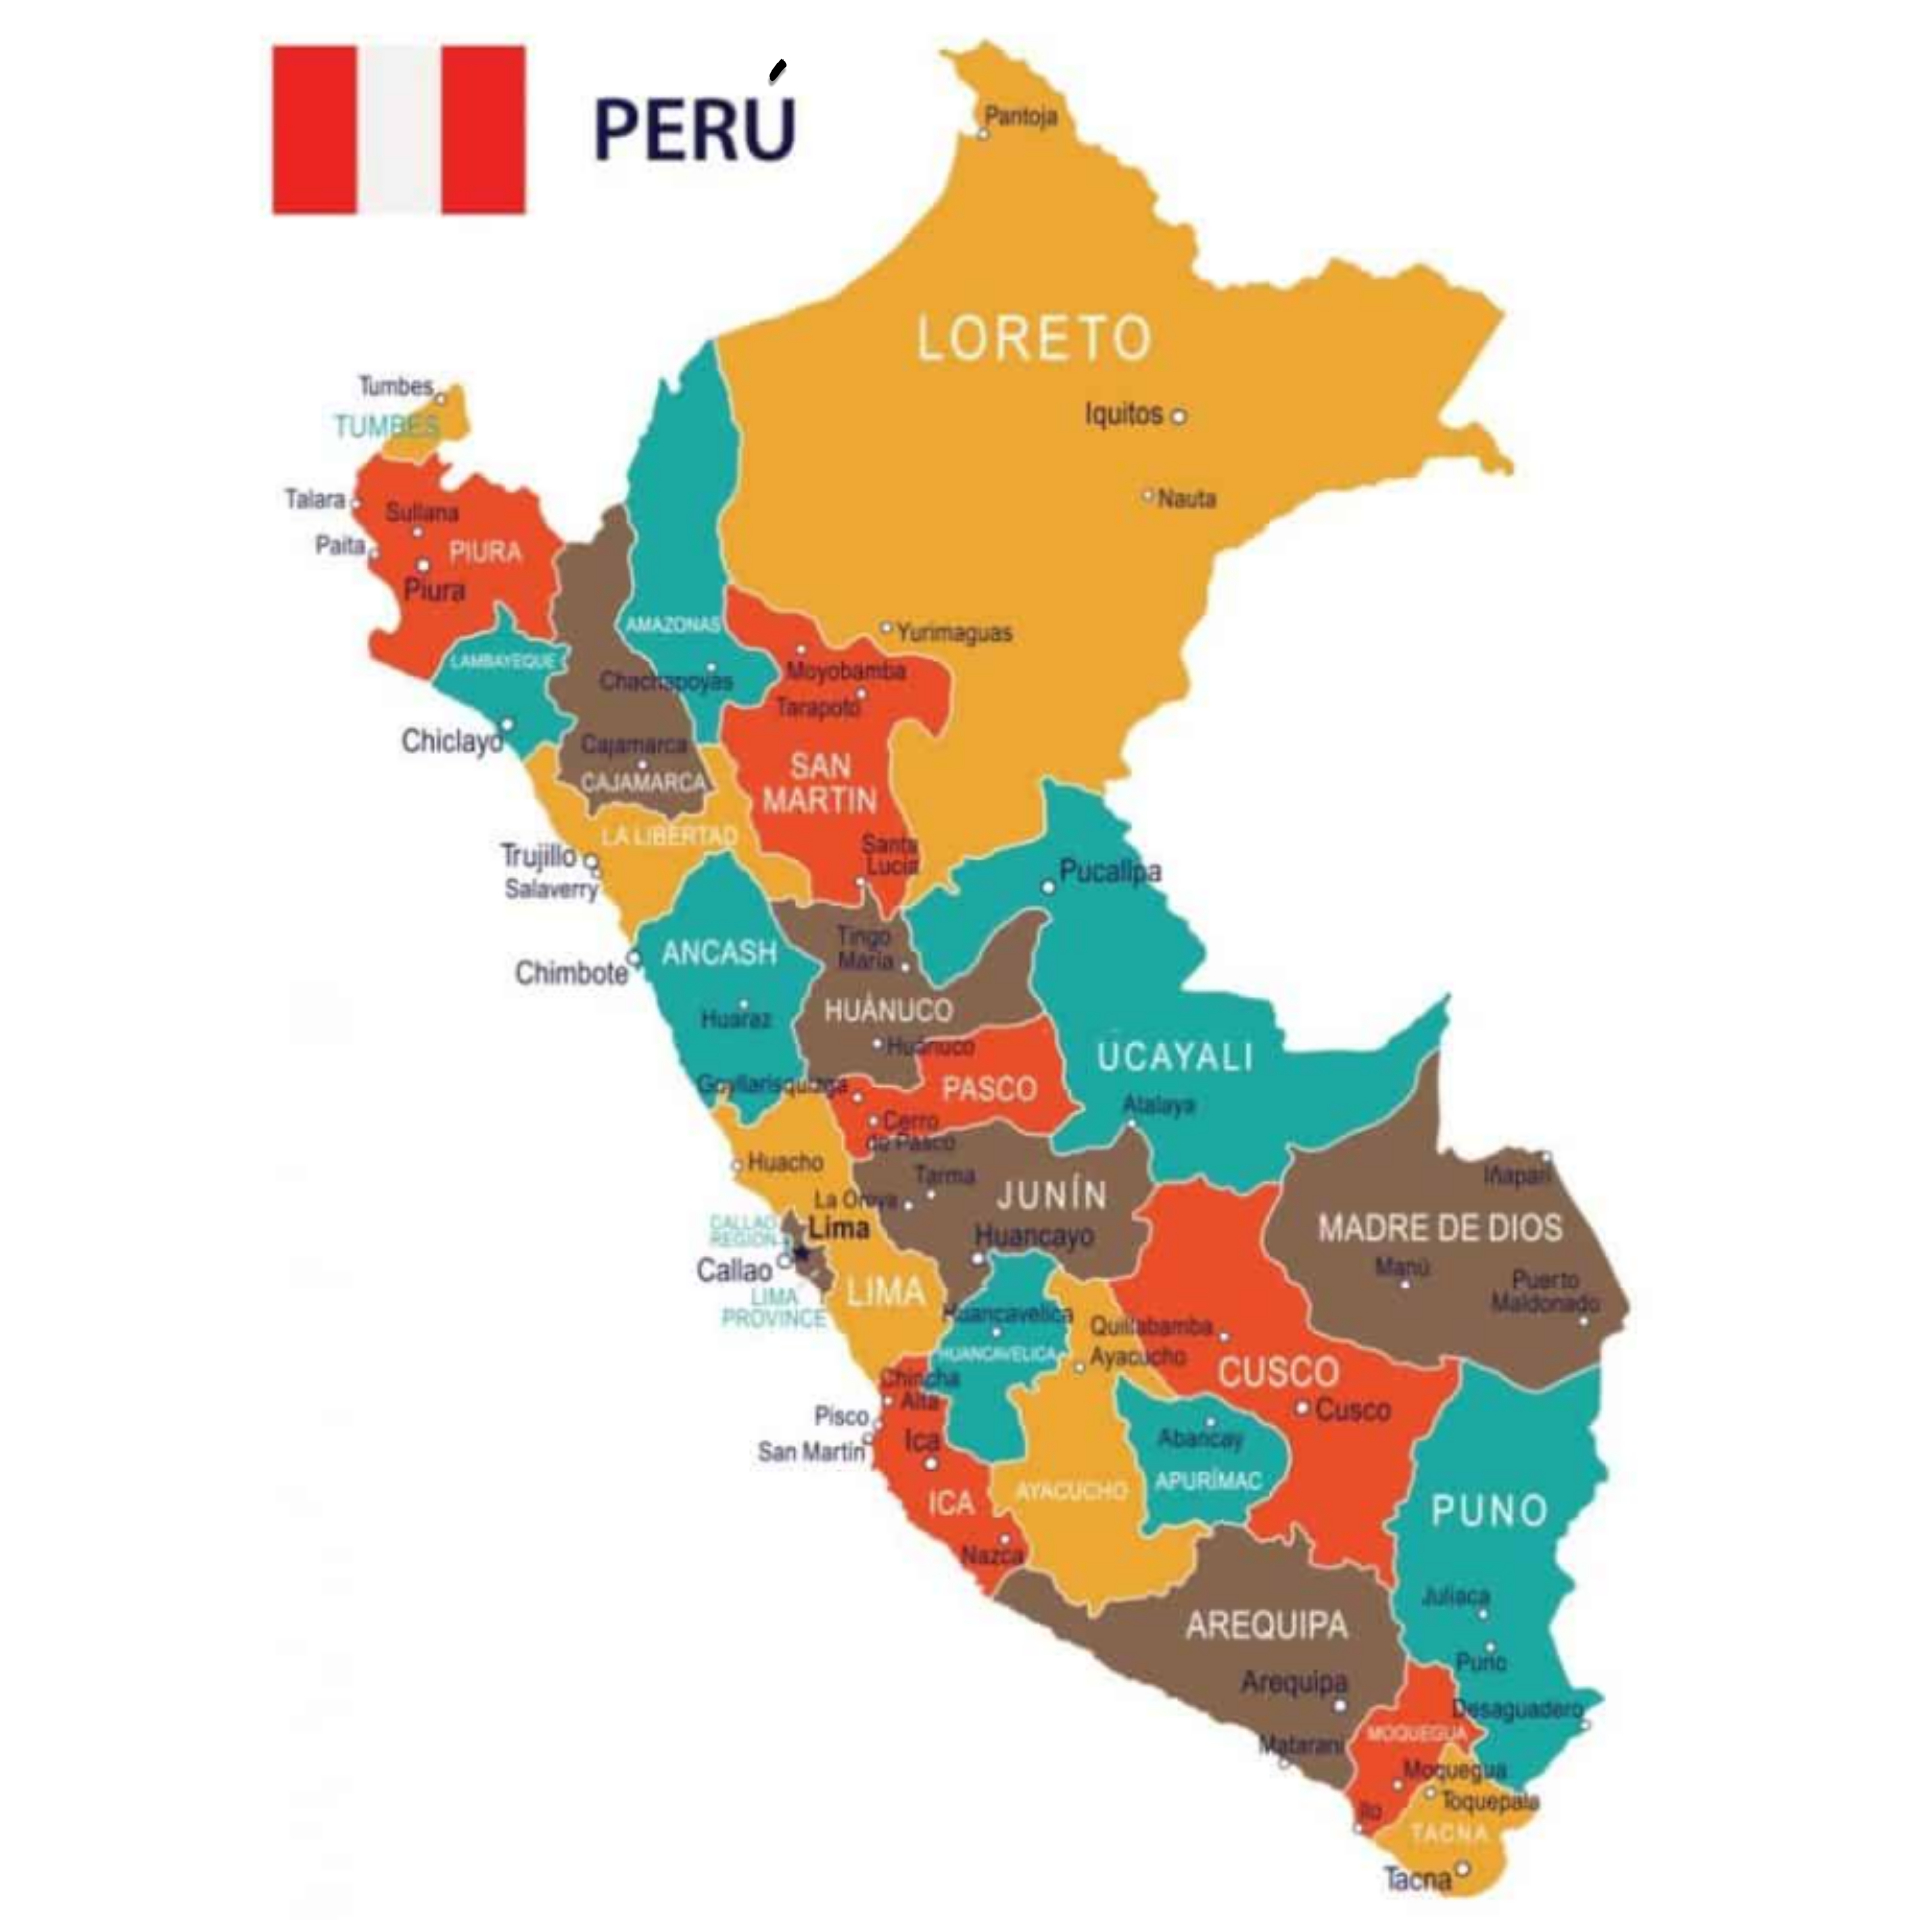 Nuestro Perú siempre ha estado enfermo, no hay que esperar que agonice